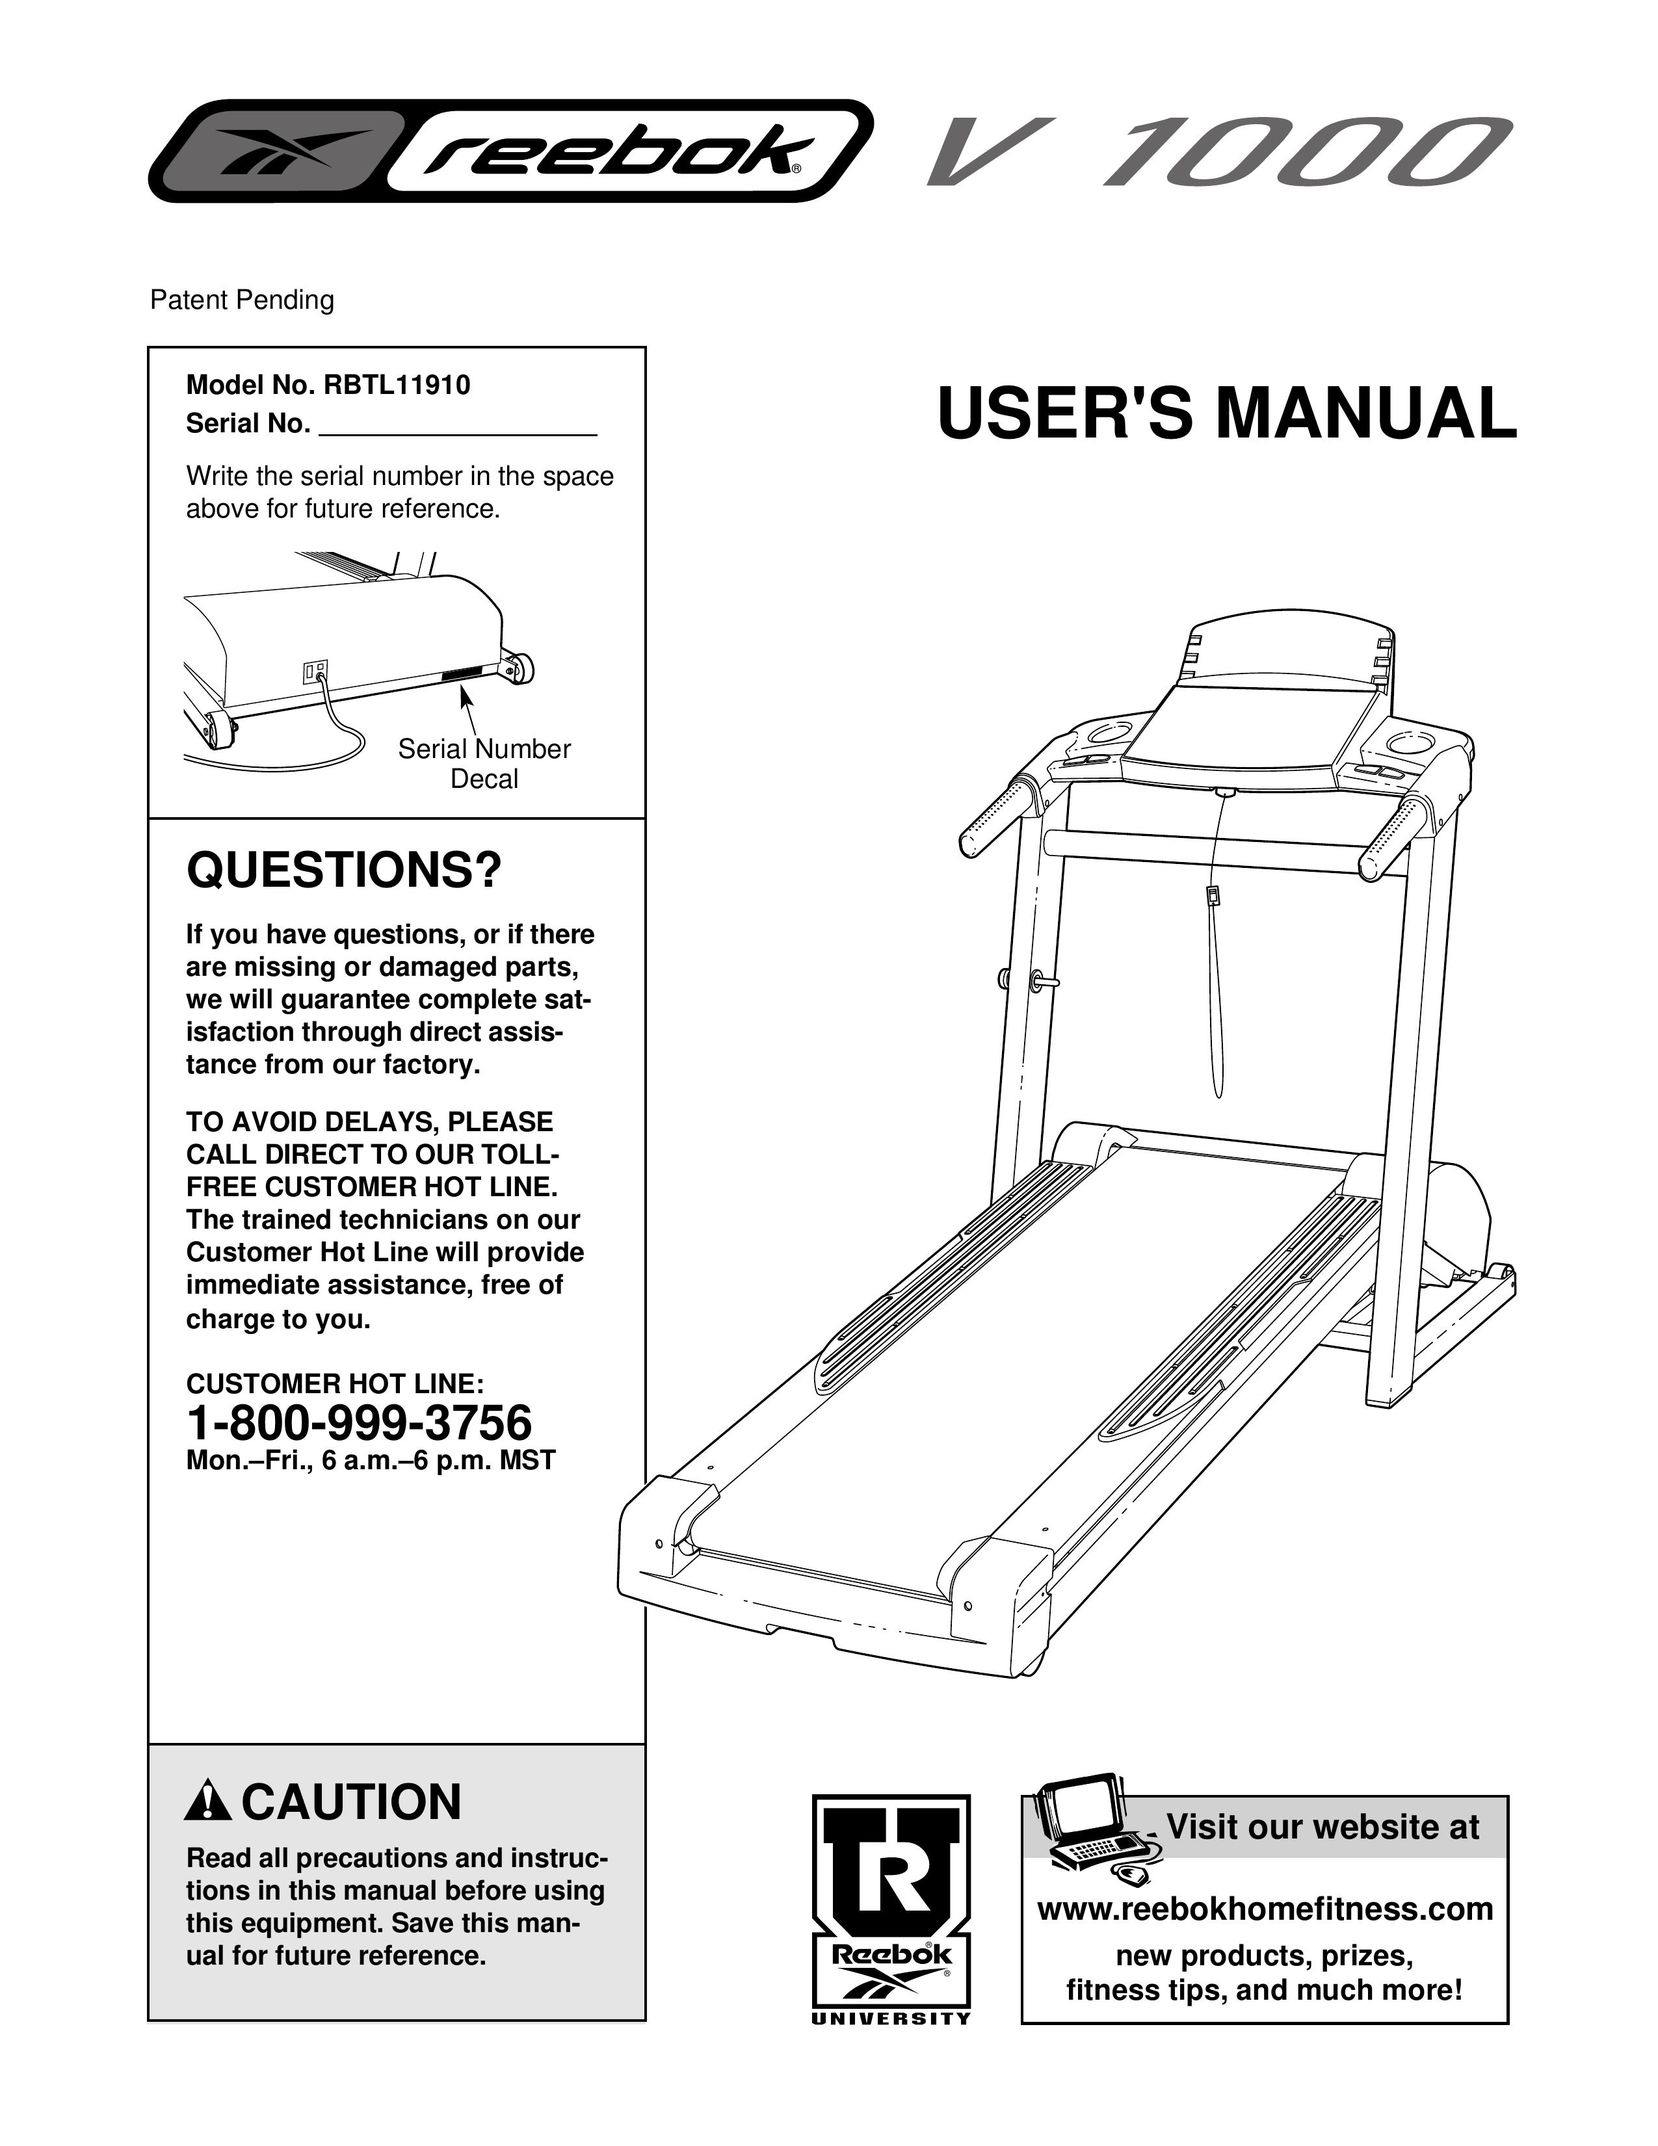 Reebok Fitness RBTL11910 Treadmill User Manual